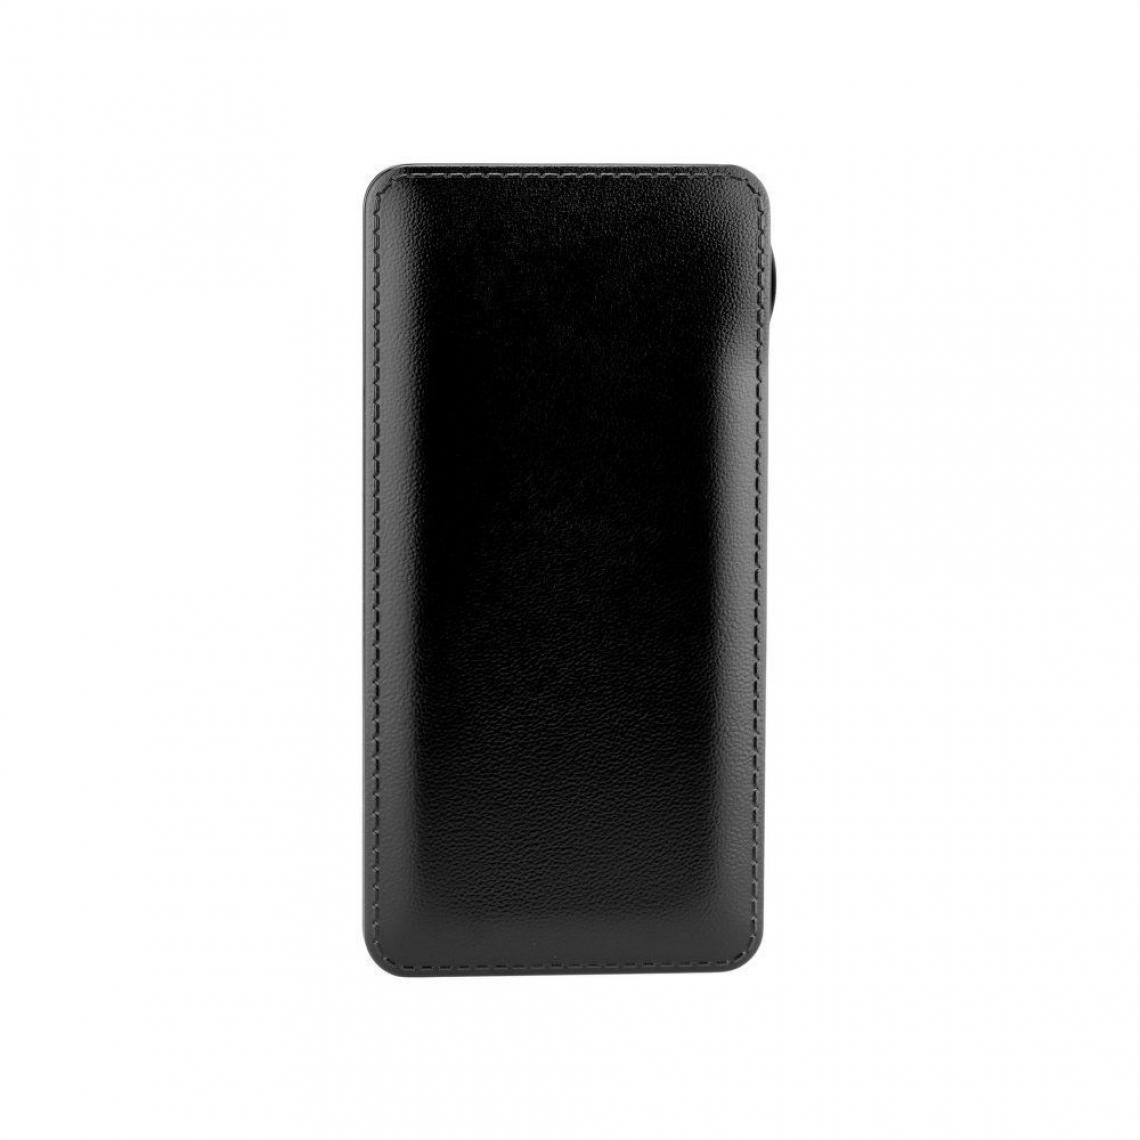 Ozzzo - Chargeur batterie externe 30000 mAh powerbank ozzzo noir pour LG G Pad 8.3" V500 - Autres accessoires smartphone